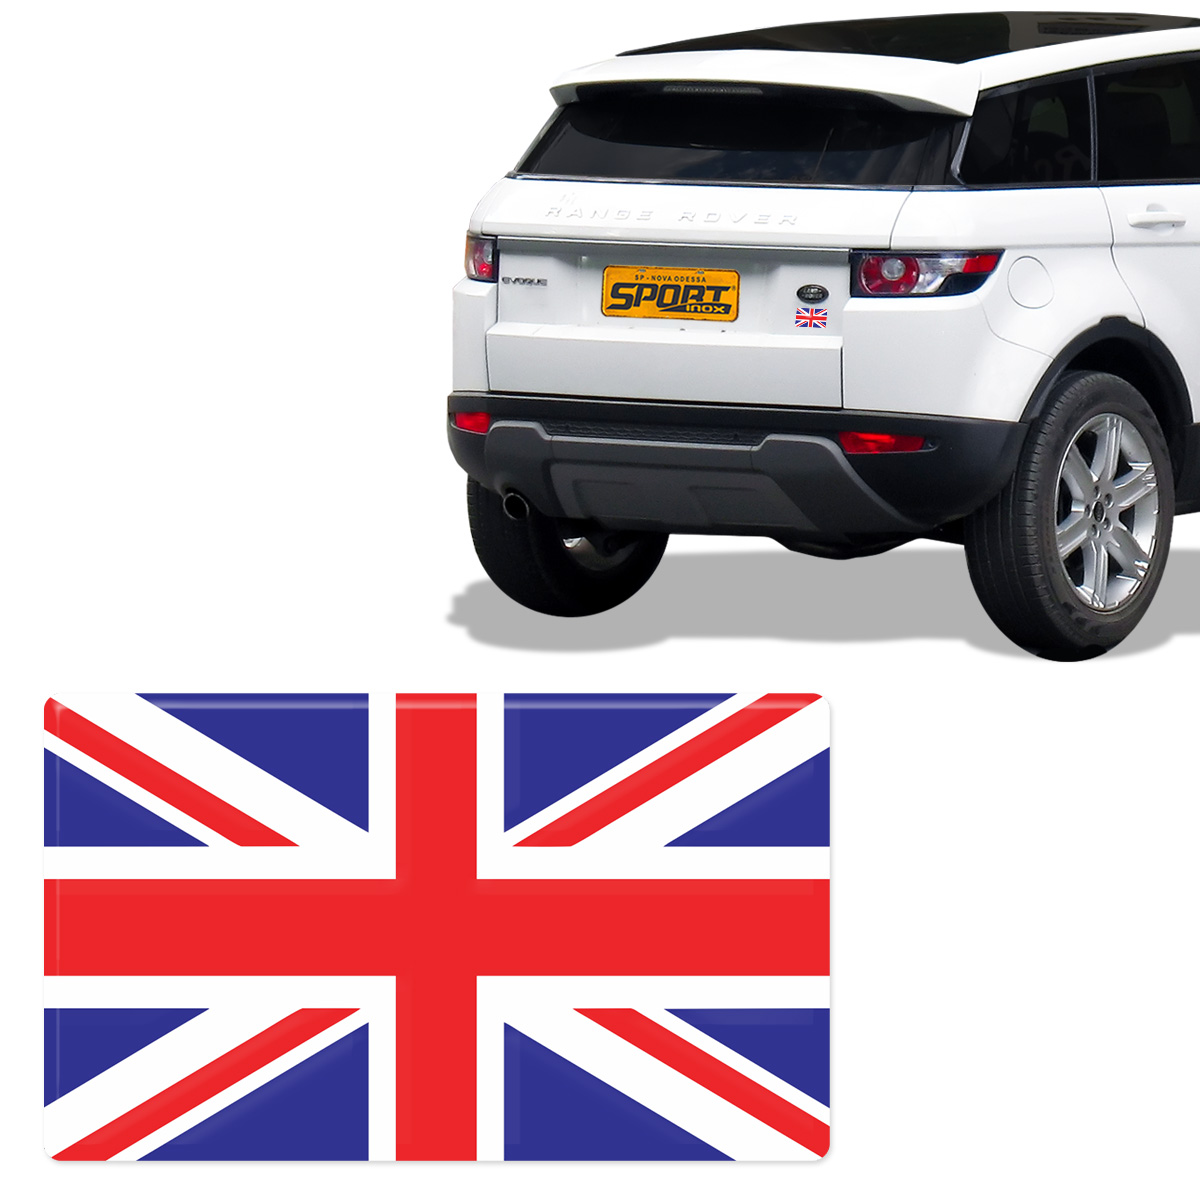 Adesivo Bandeira Resinada Land Rover Reino Unido Inglaterra